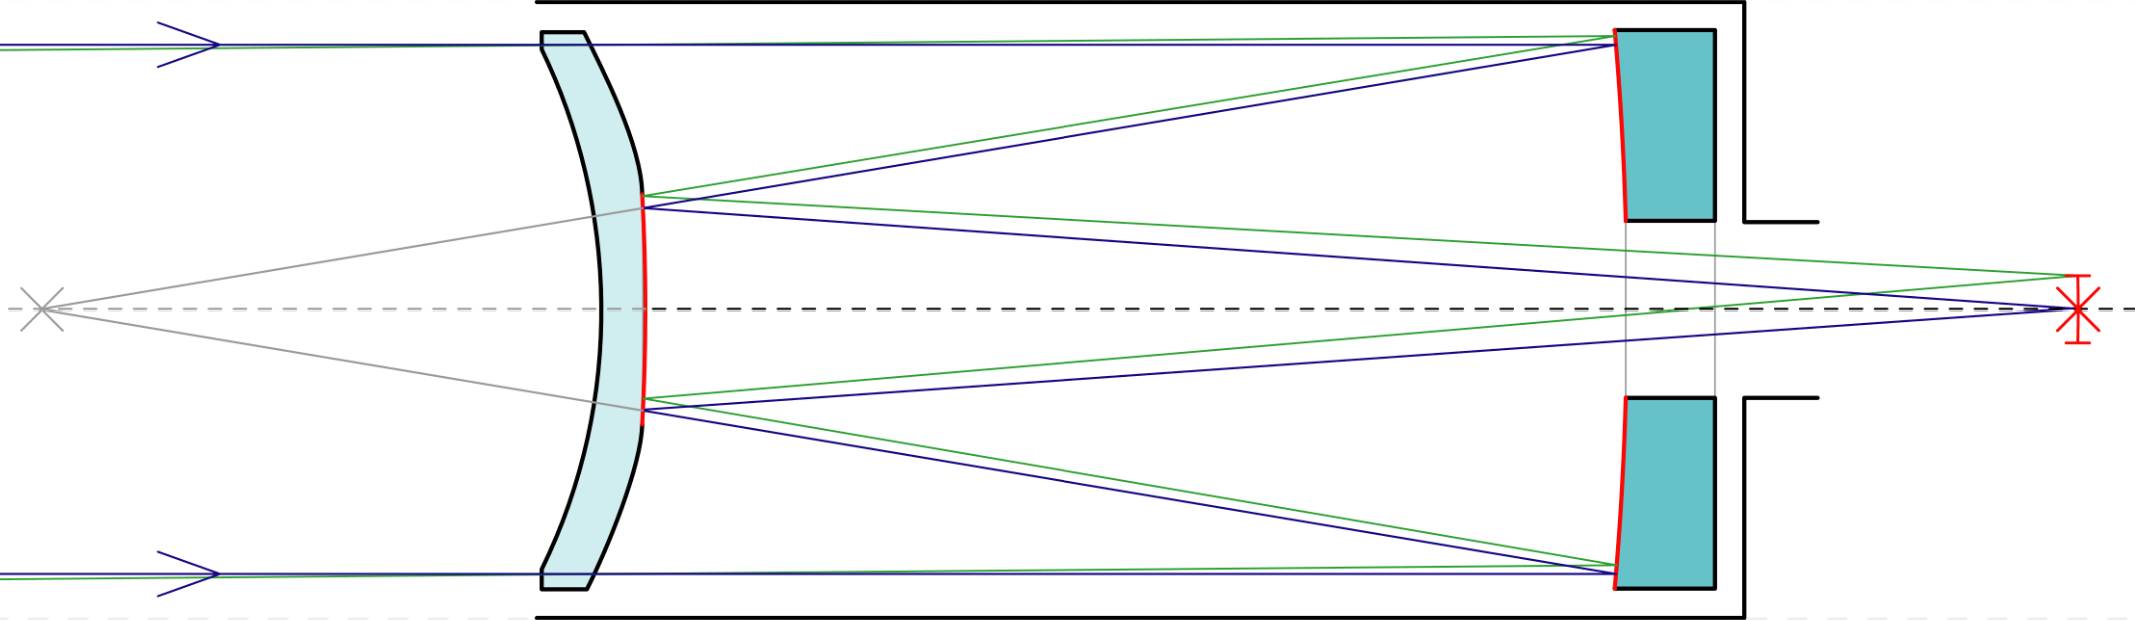 Схема объектива телескопа Максутова-Кассегрена.